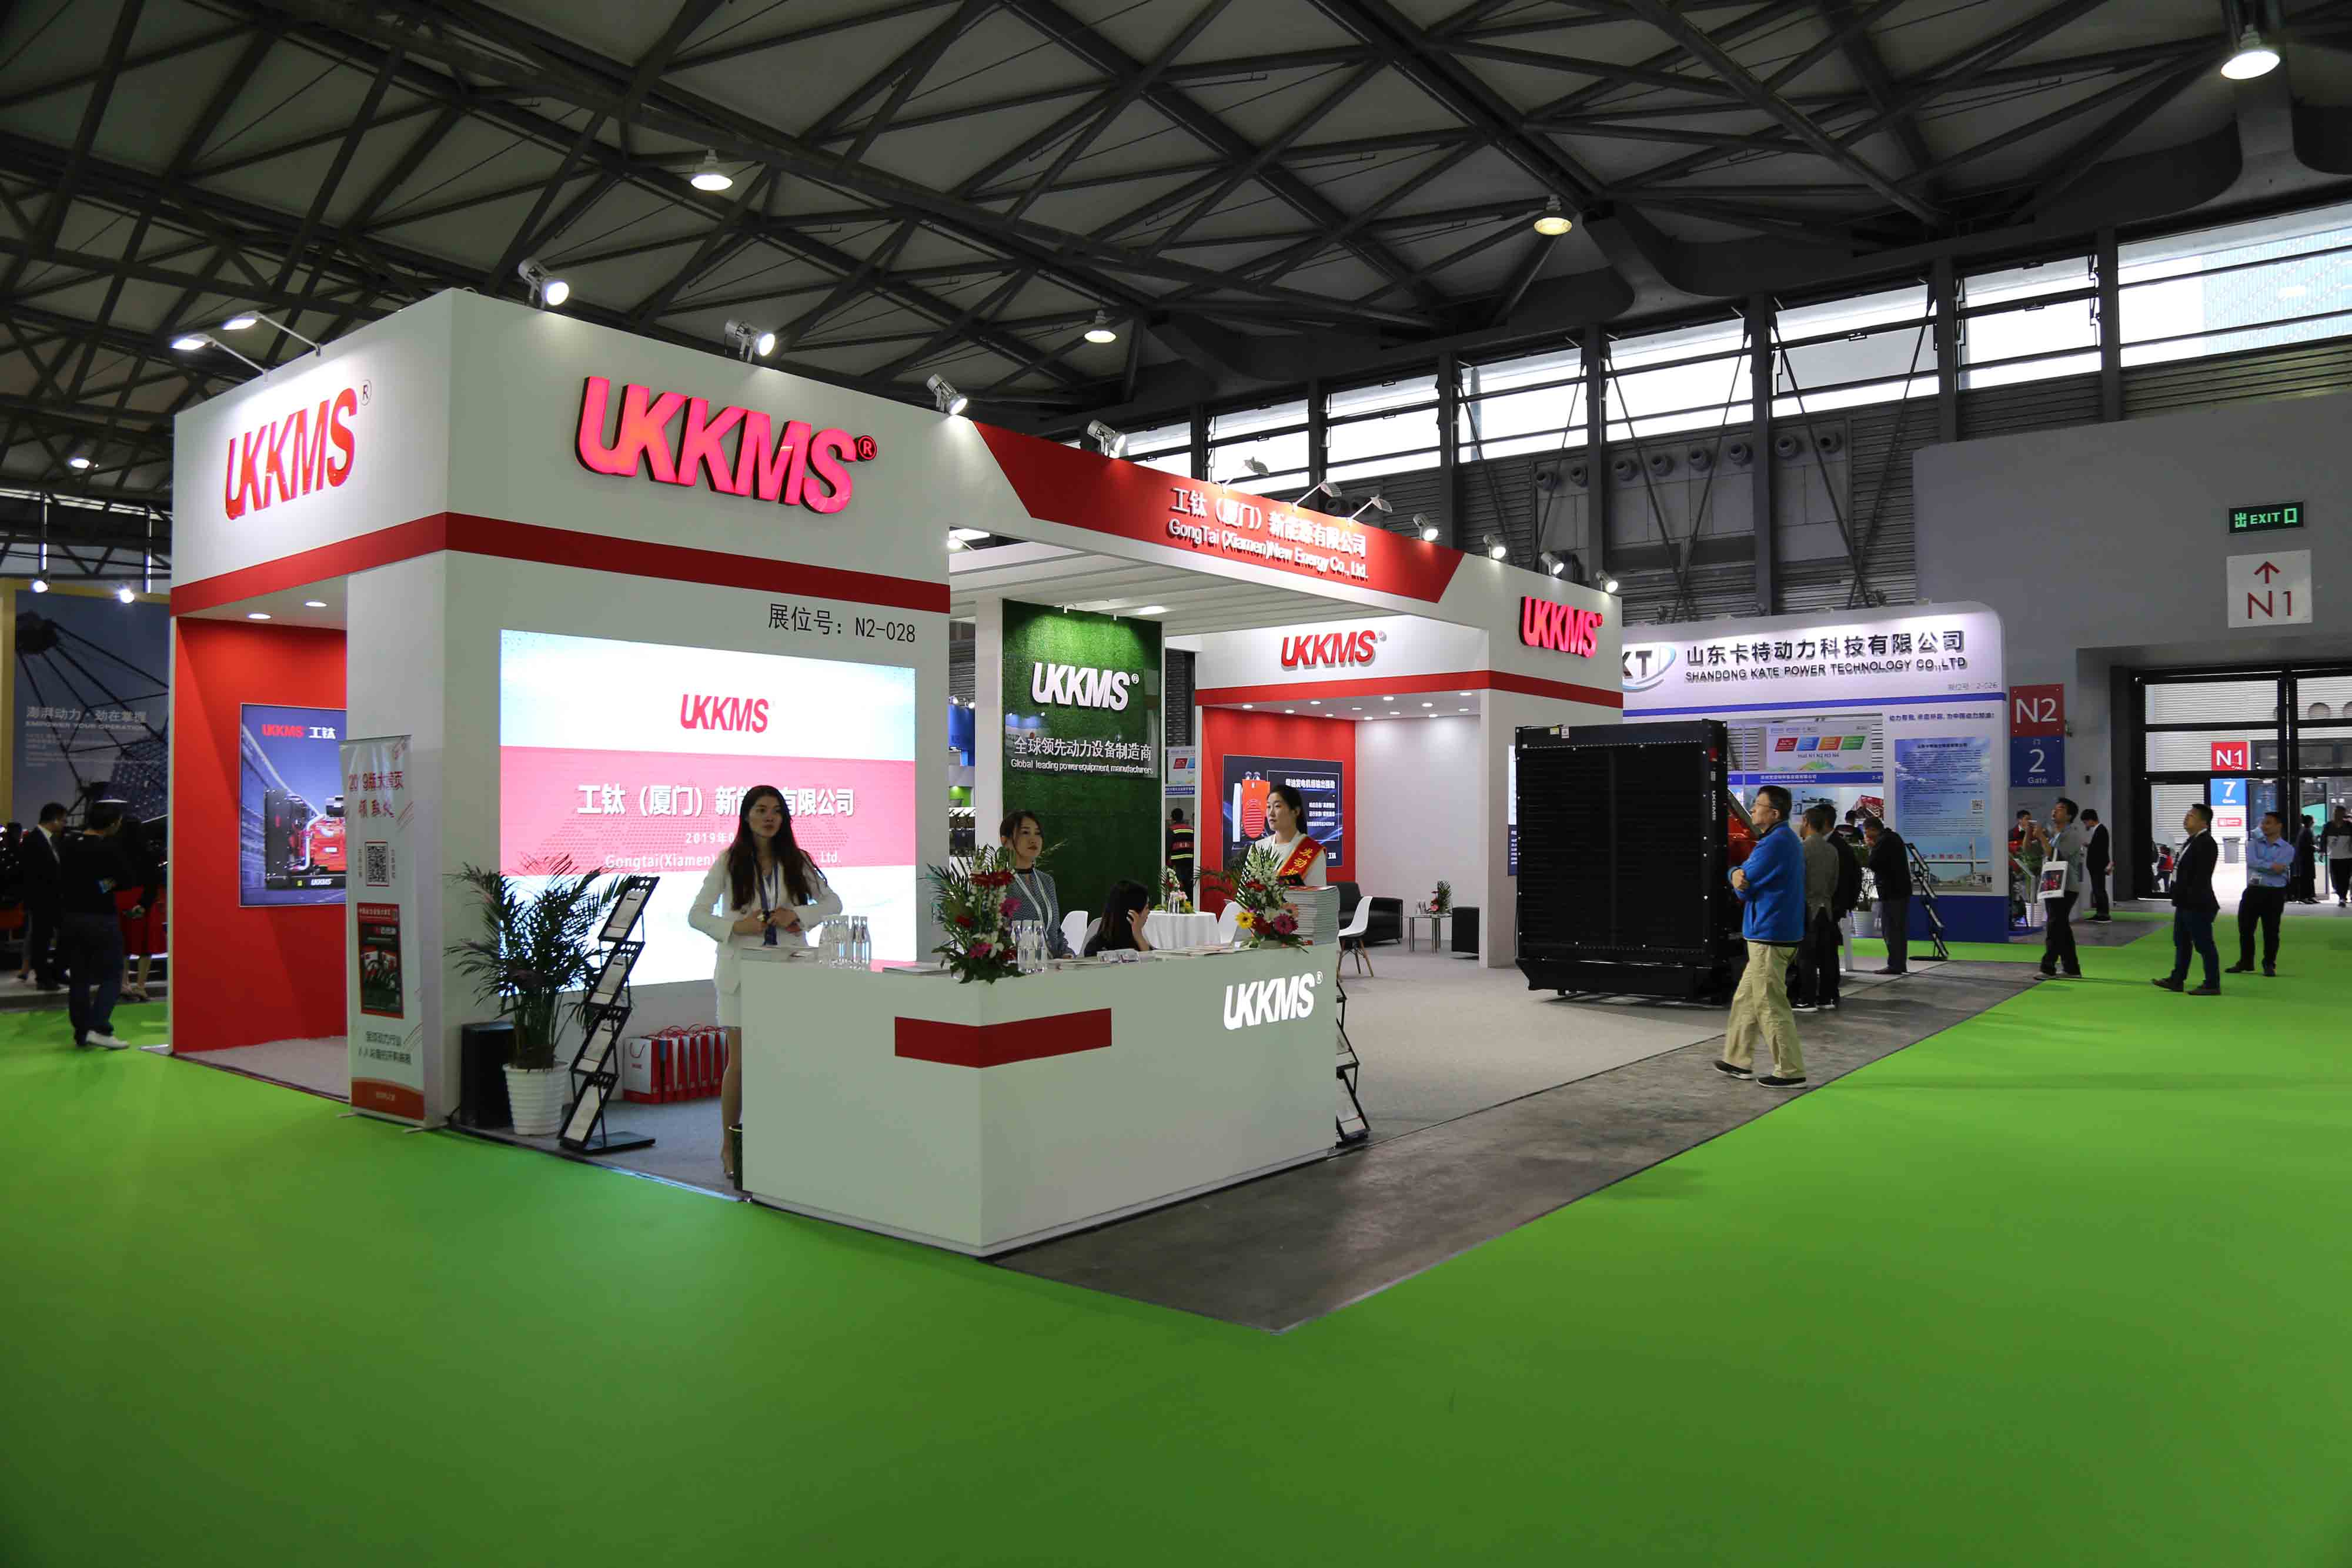 xiamen ba power представила дизельный генератор ukkms 800kw на выставке g-power 2019 в шанхае